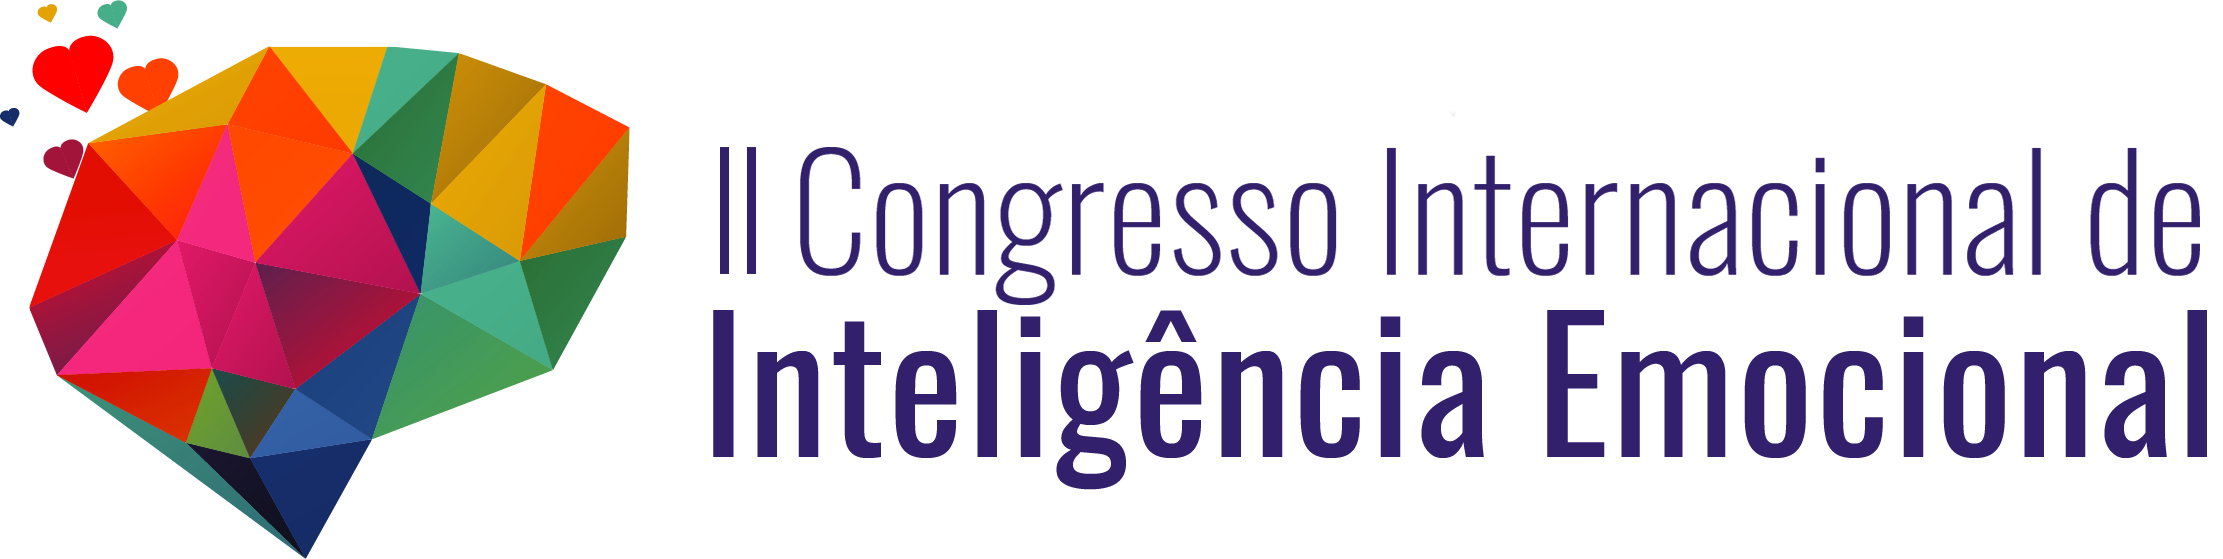 Congresso Internacional de Inteligência Emocional